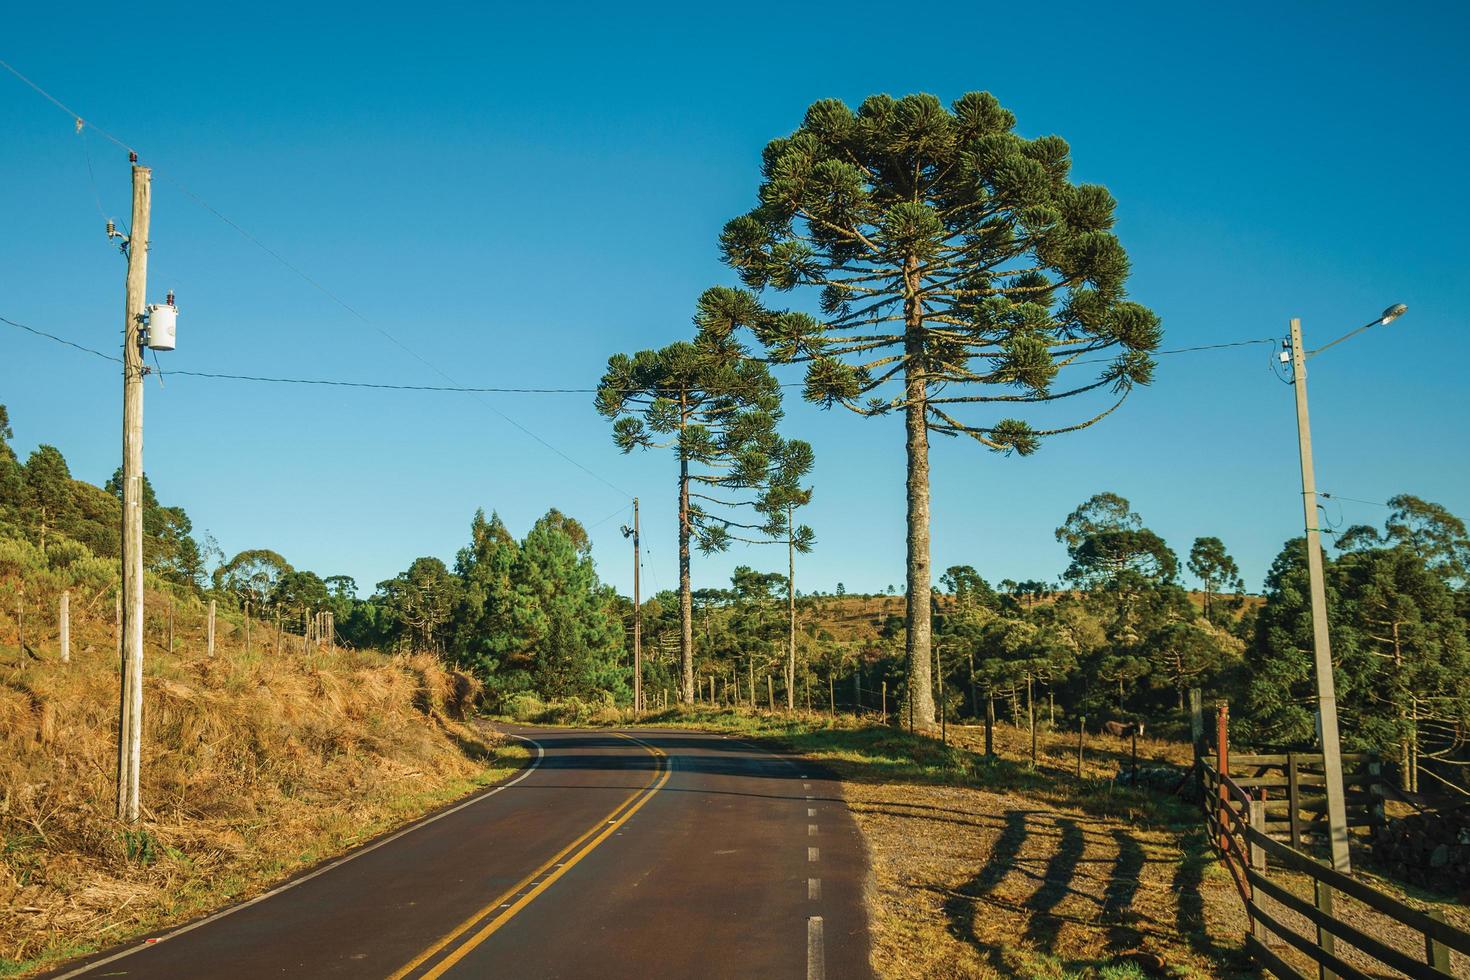 strada asfaltata che passa attraverso le pianure rurali chiamate pampa lungo gli alberi e il recinto di filo spinato vicino a cambara do sul. una piccola cittadina di campagna nel sud del Brasile con incredibili attrazioni turistiche naturali. foto